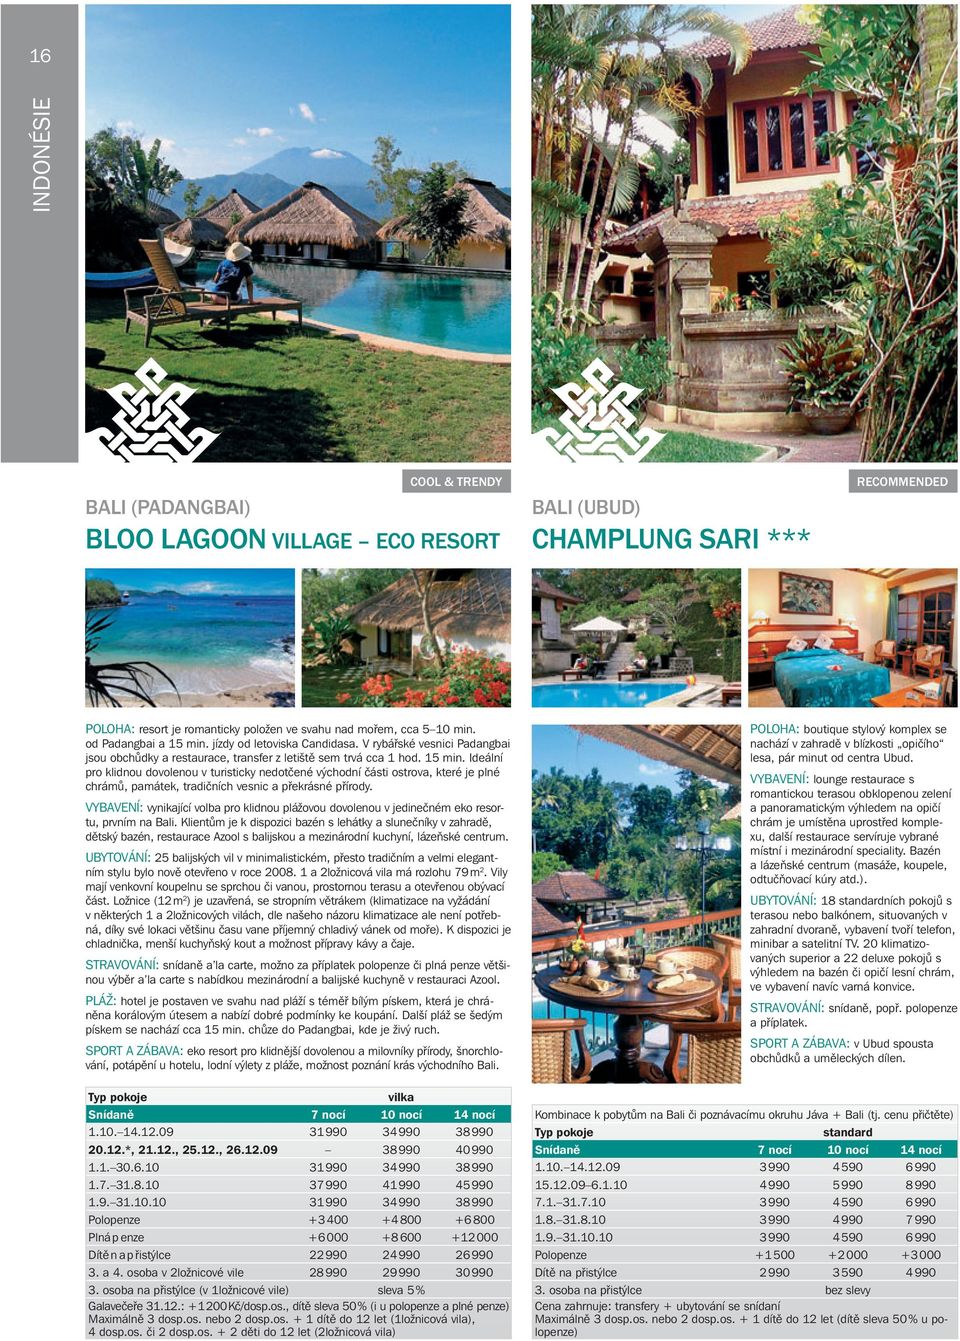 VYBAVENÍ: vynikající volba pro klidnou plážovou dovolenou v jedinečném eko resortu, prvním na Bali.